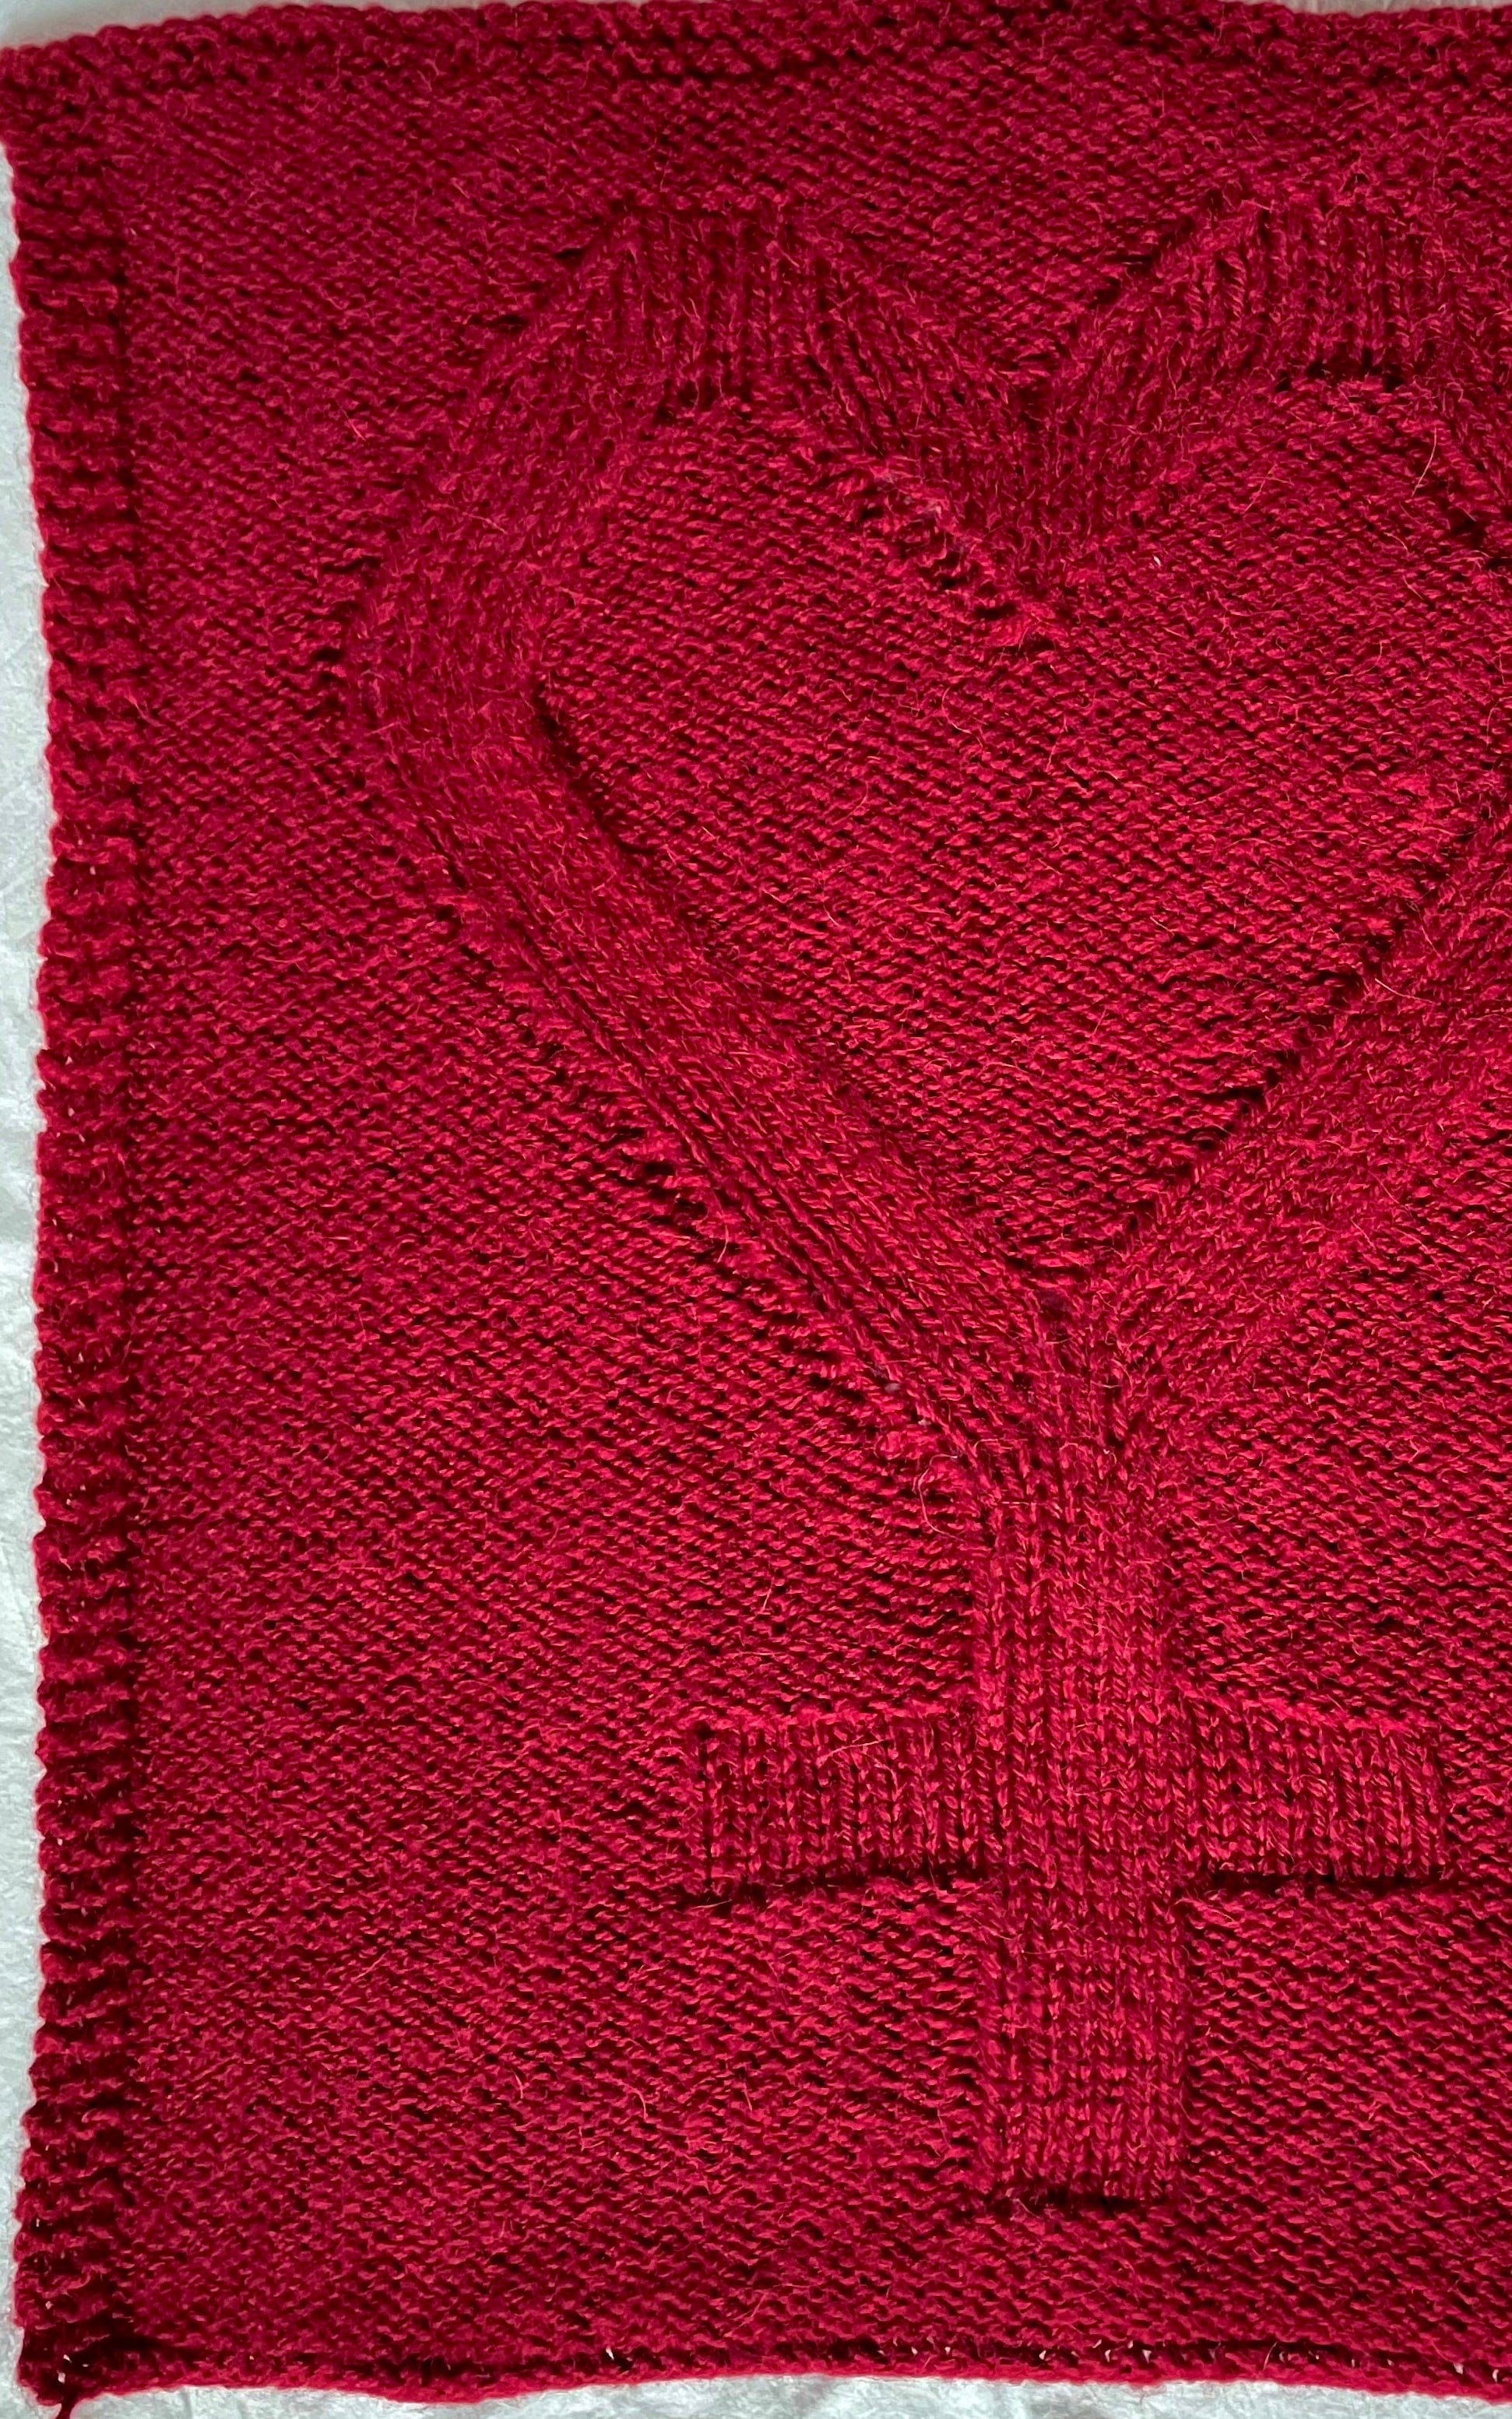 Strickquadrat - VIVA VITTORIA - Fraeulein Knitter - Strickset von FRAEULEIN KNITTER jetzt online kaufen bei OONIQUE